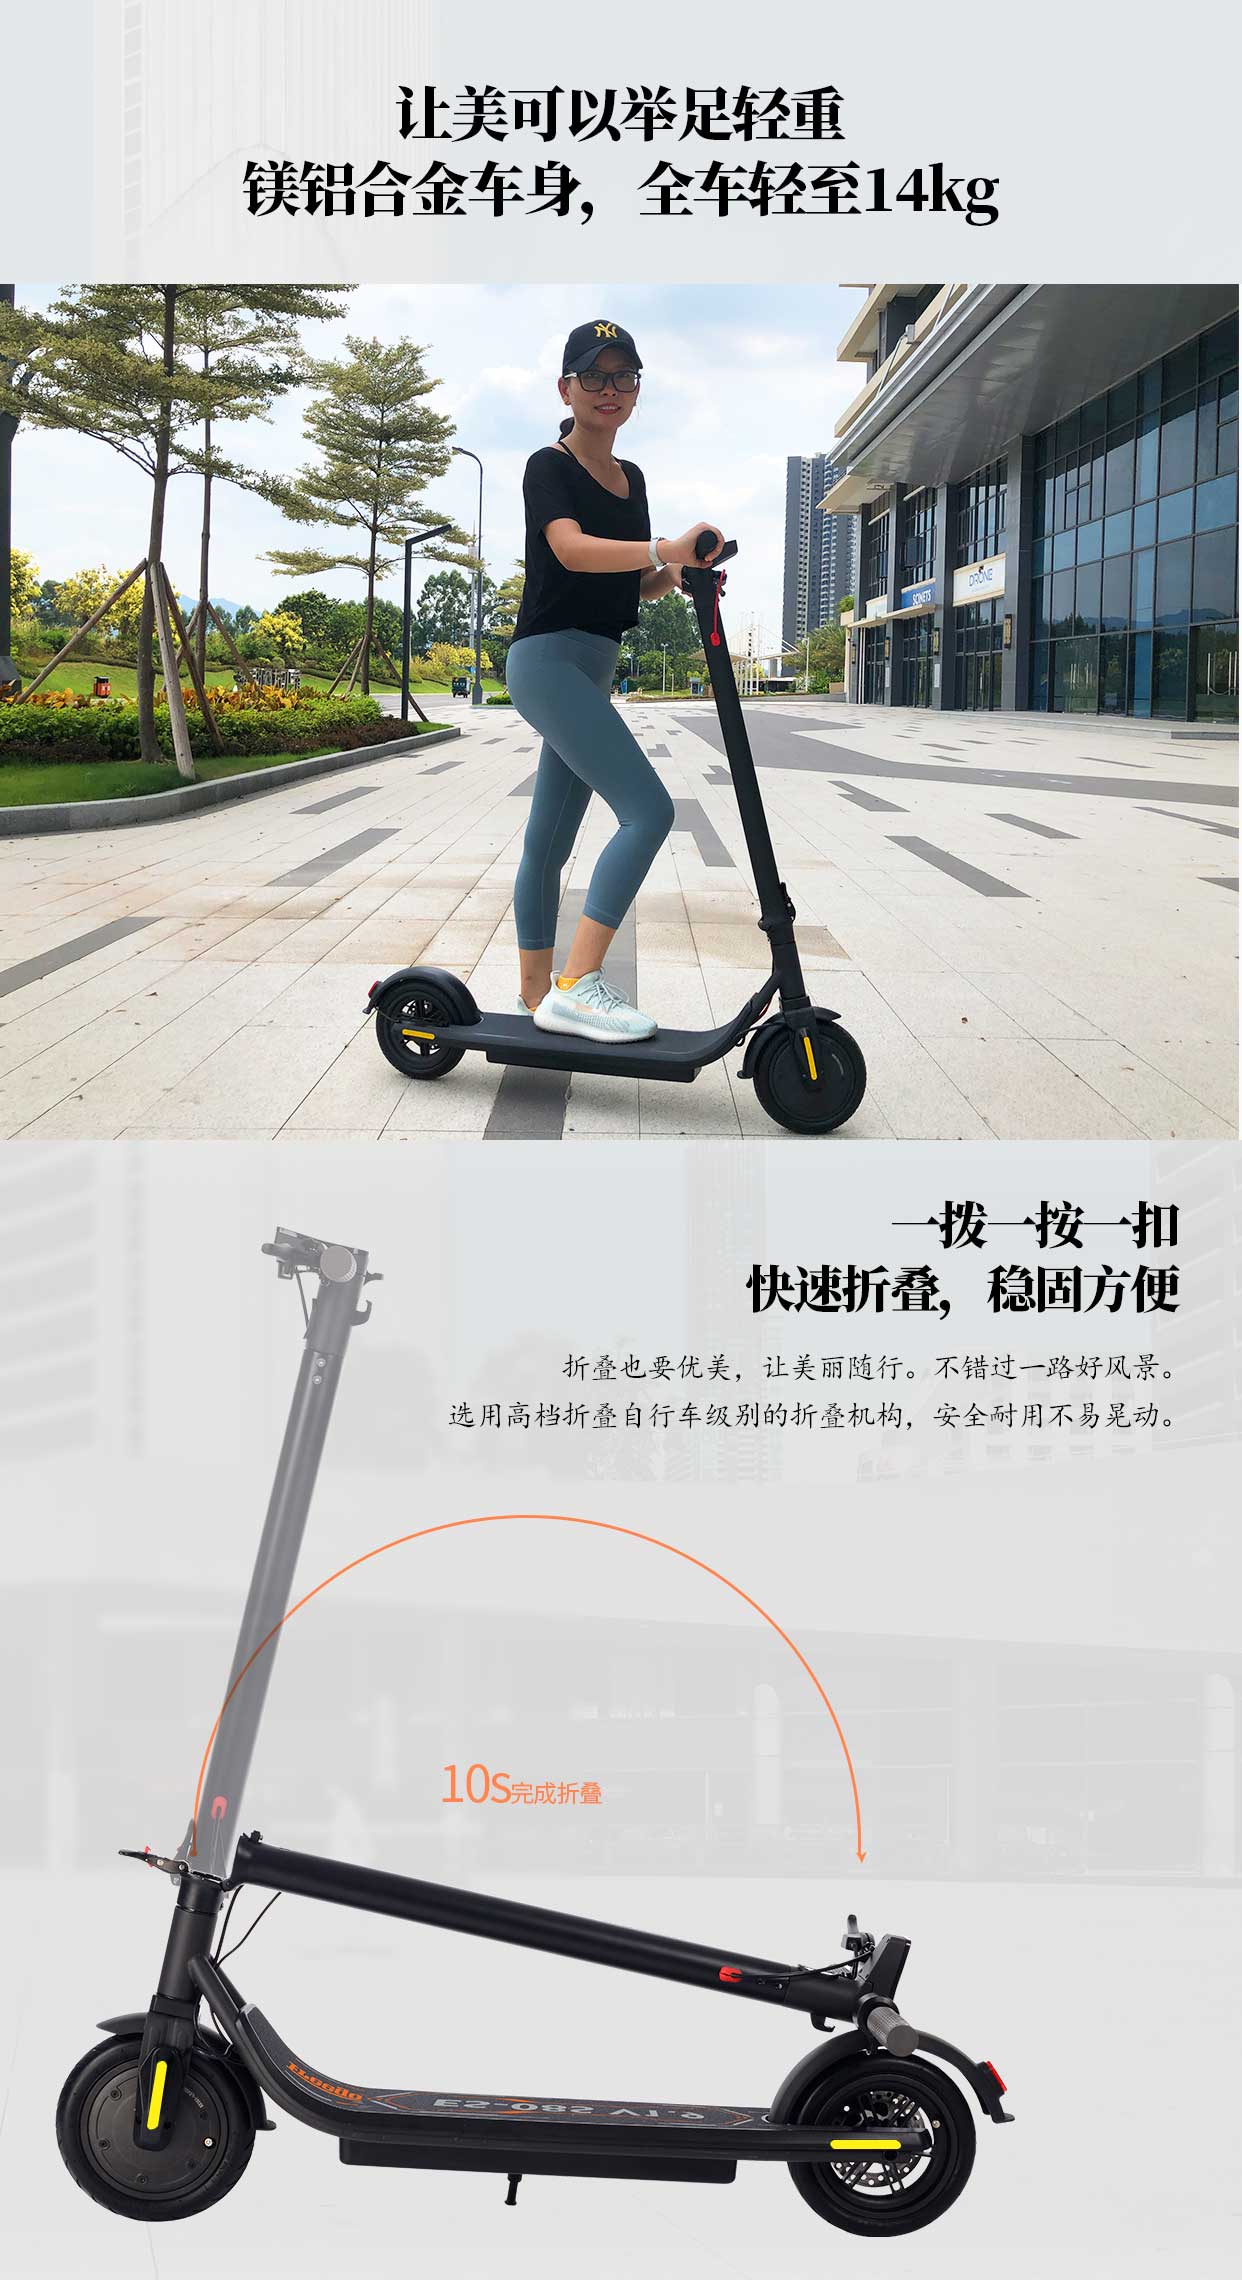 الصين 2019 حار بيع Freego ES-08s V1.9 8.5inch 2-عجلة سكوتر الإلكترونية لمدة 36 فولت 350 واط الصانع